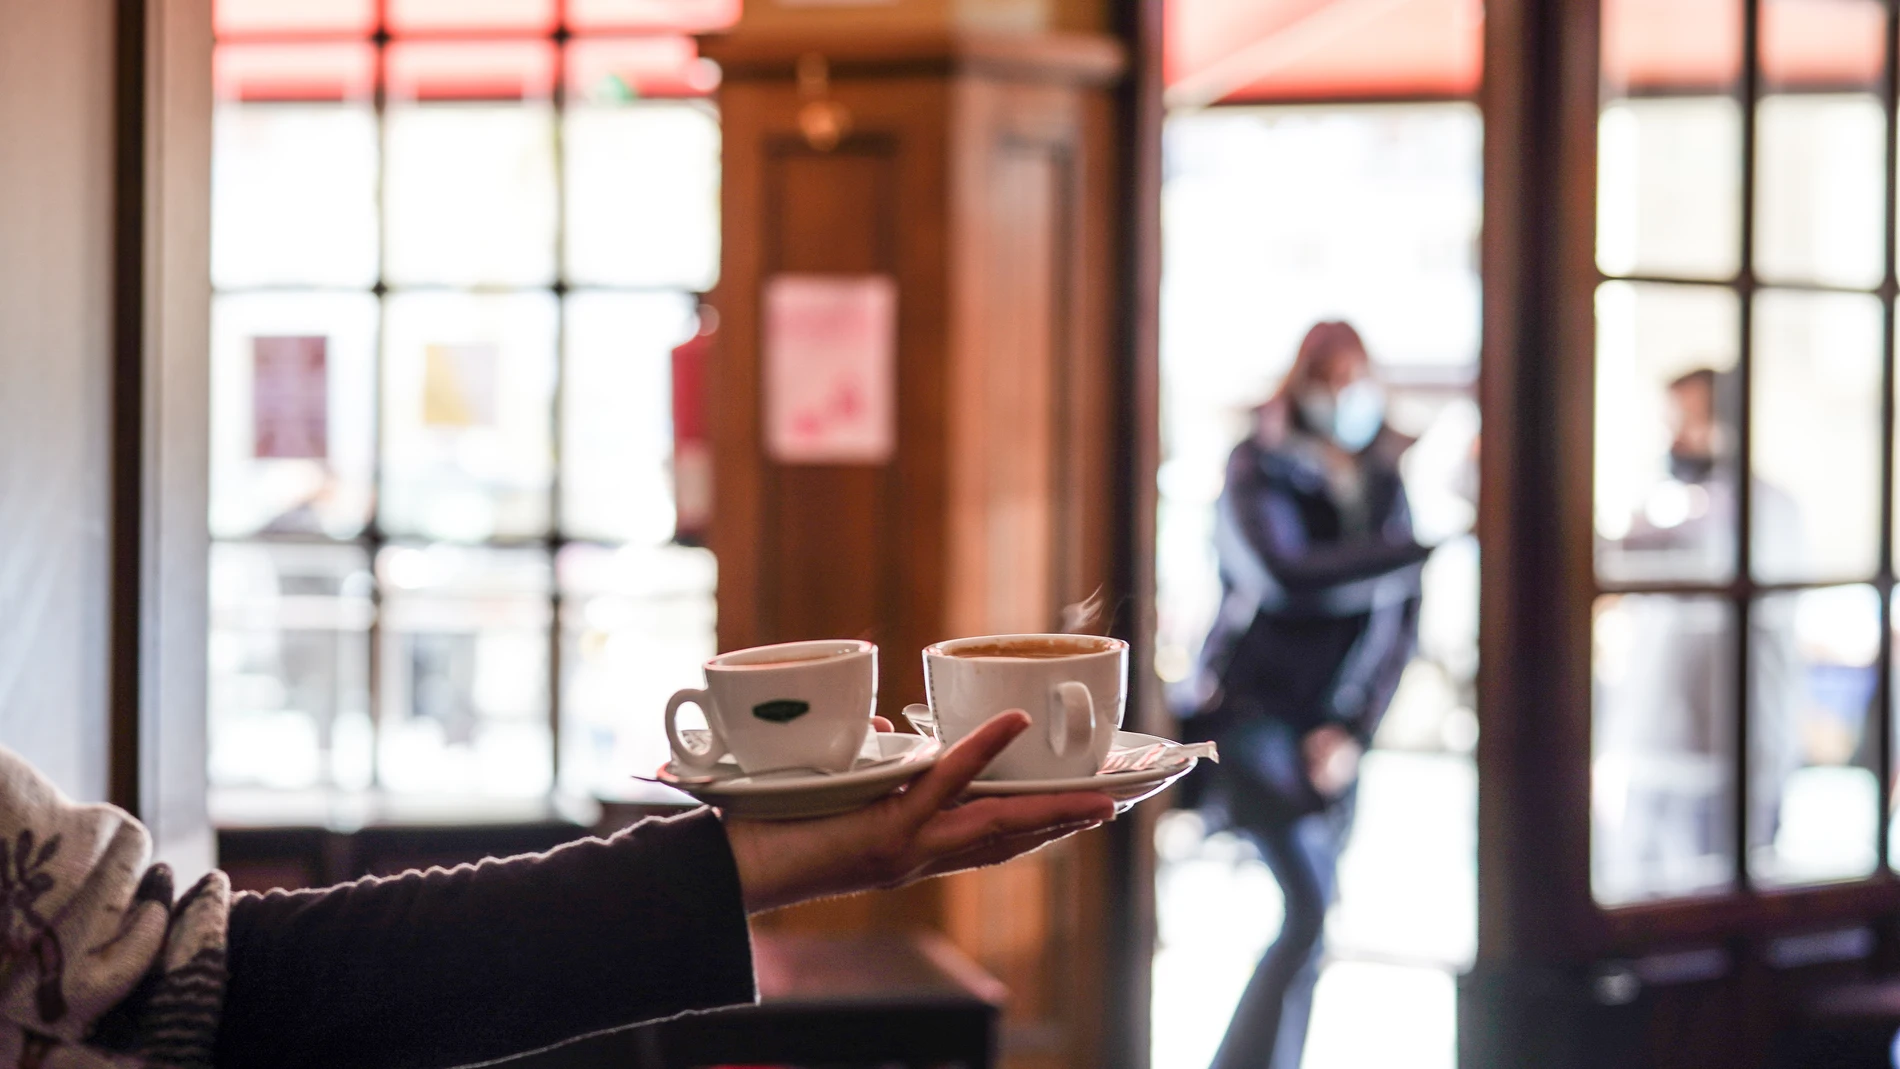 Un camarero sirve varios cafés en una cafetería de Vitoria, que desde este miércoles 7 de abril cuenta con un nuevo cierre perimetral